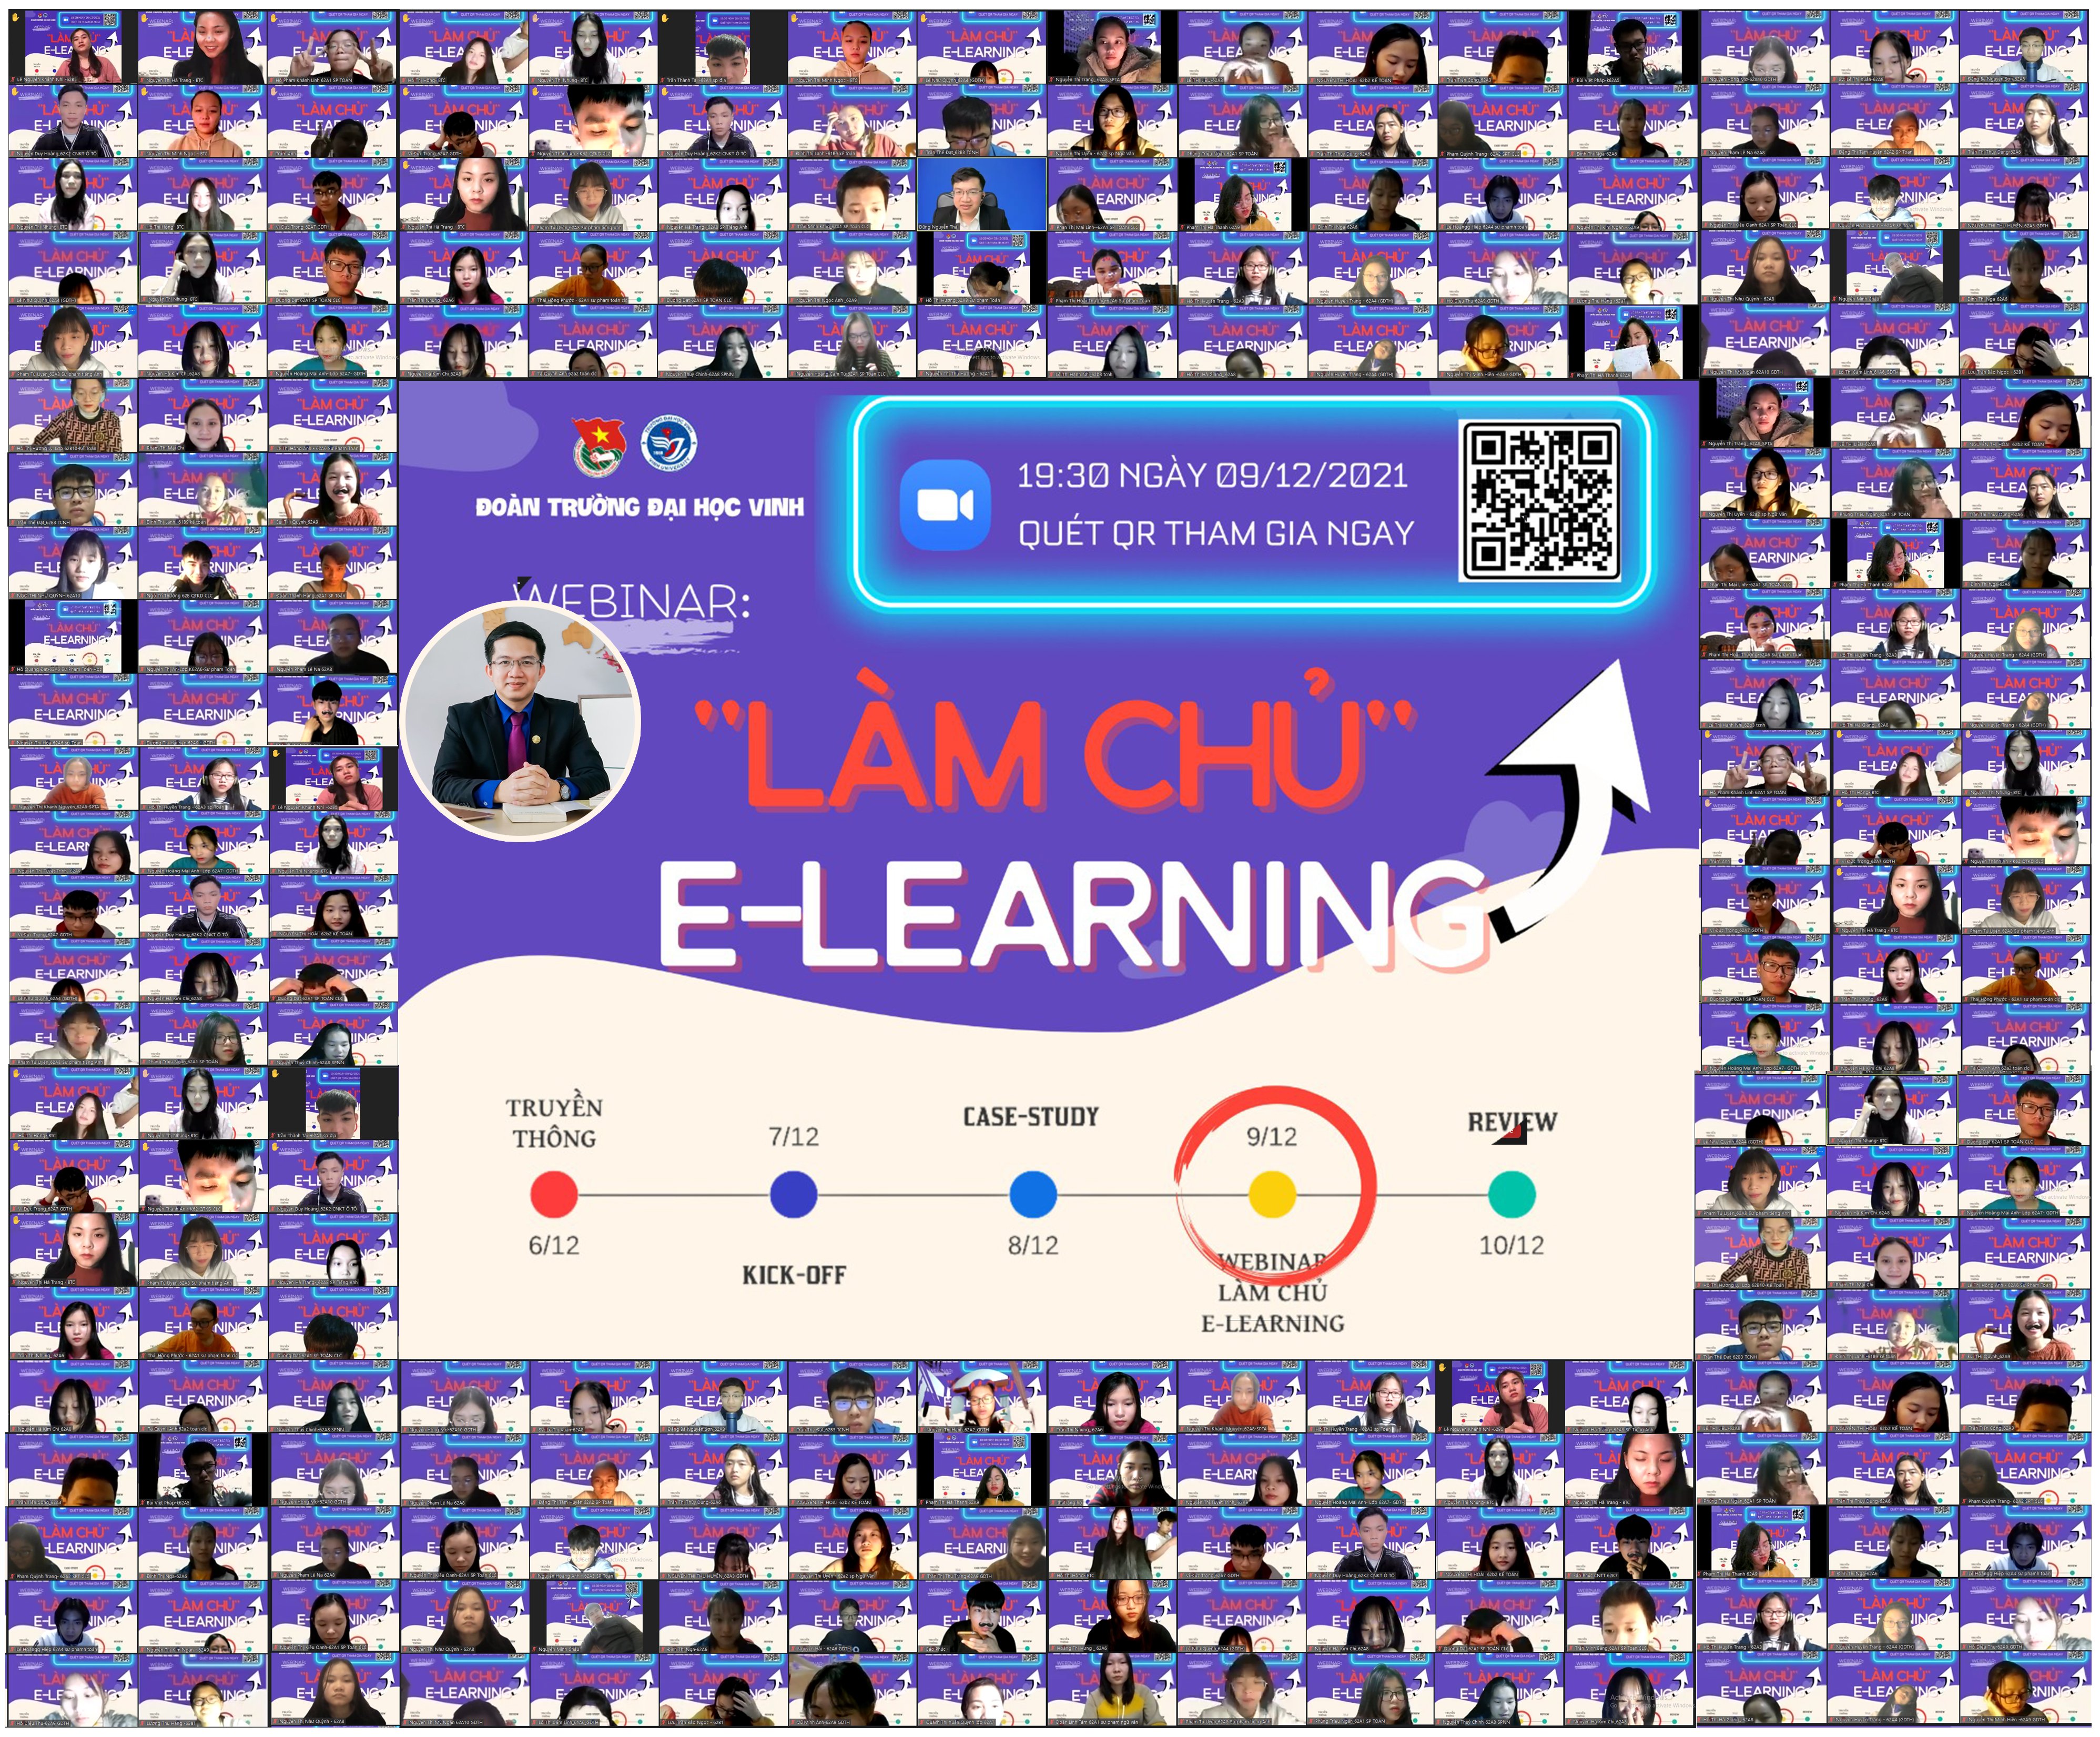 Hơn 500 Đoàn viên thanh niên trường Đại học Vinh đã "Làm chủ" E-Learning như thế nào?